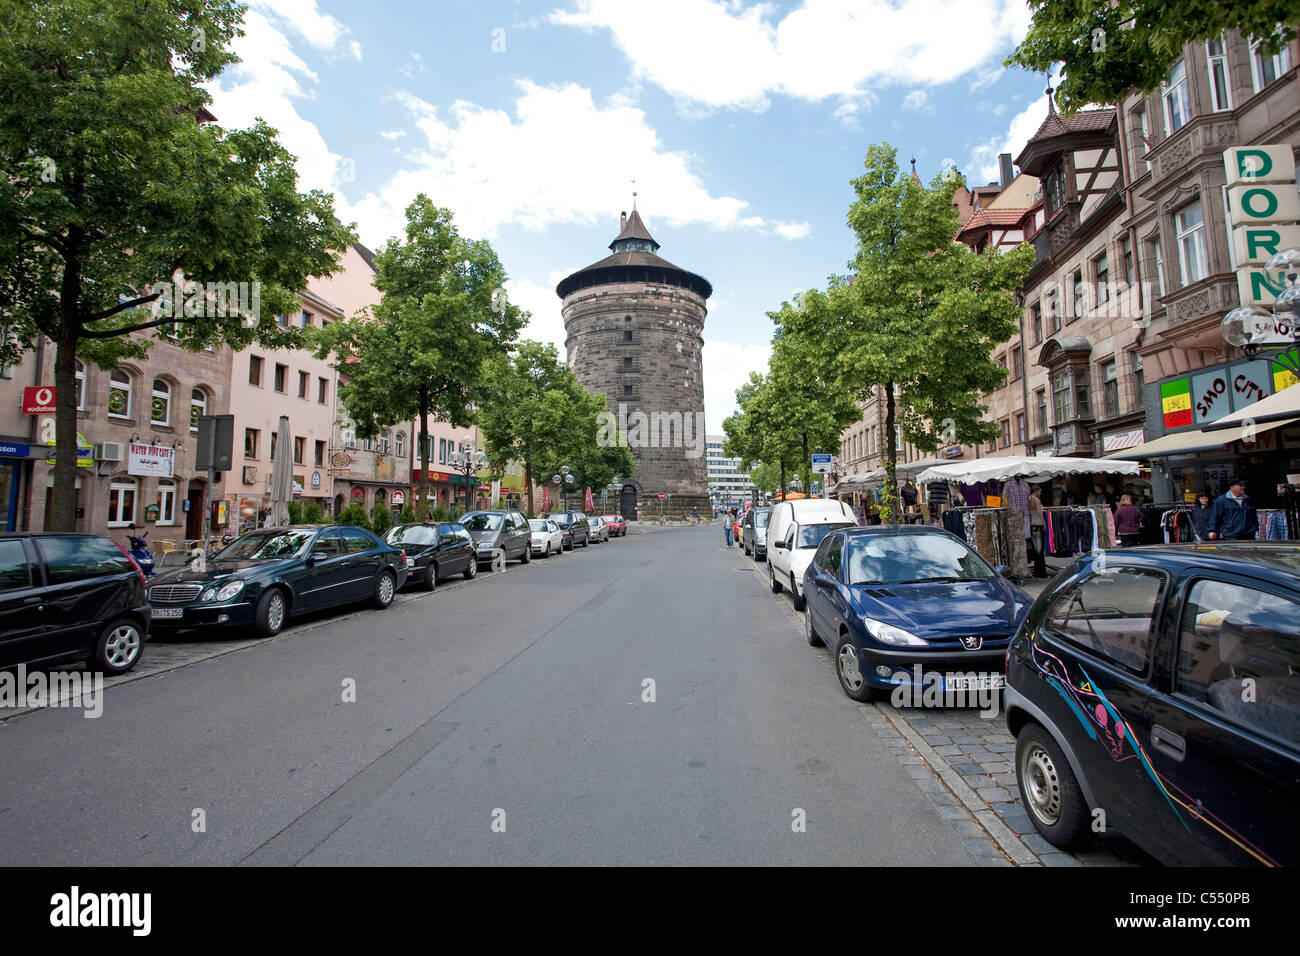 Spittlertorturm, einer der vier wichtigsten Tortuerme der letzten Stadtbefestigung, Plaerrer, Altstadt tower at the Plaerrer Stock Photo